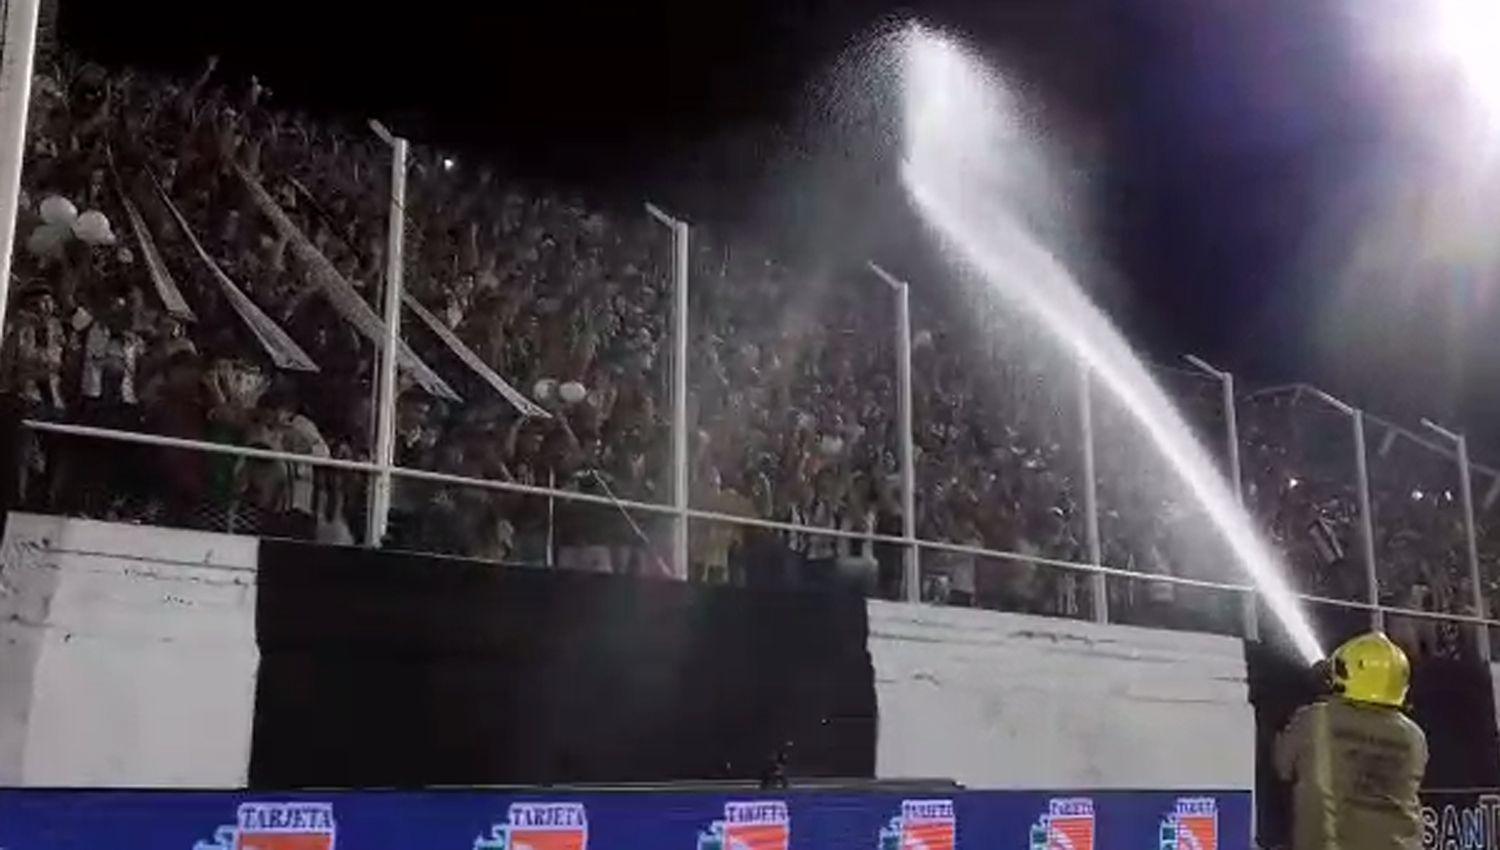 Los bomberos echaron agua a las tribunas debido al intenso calor